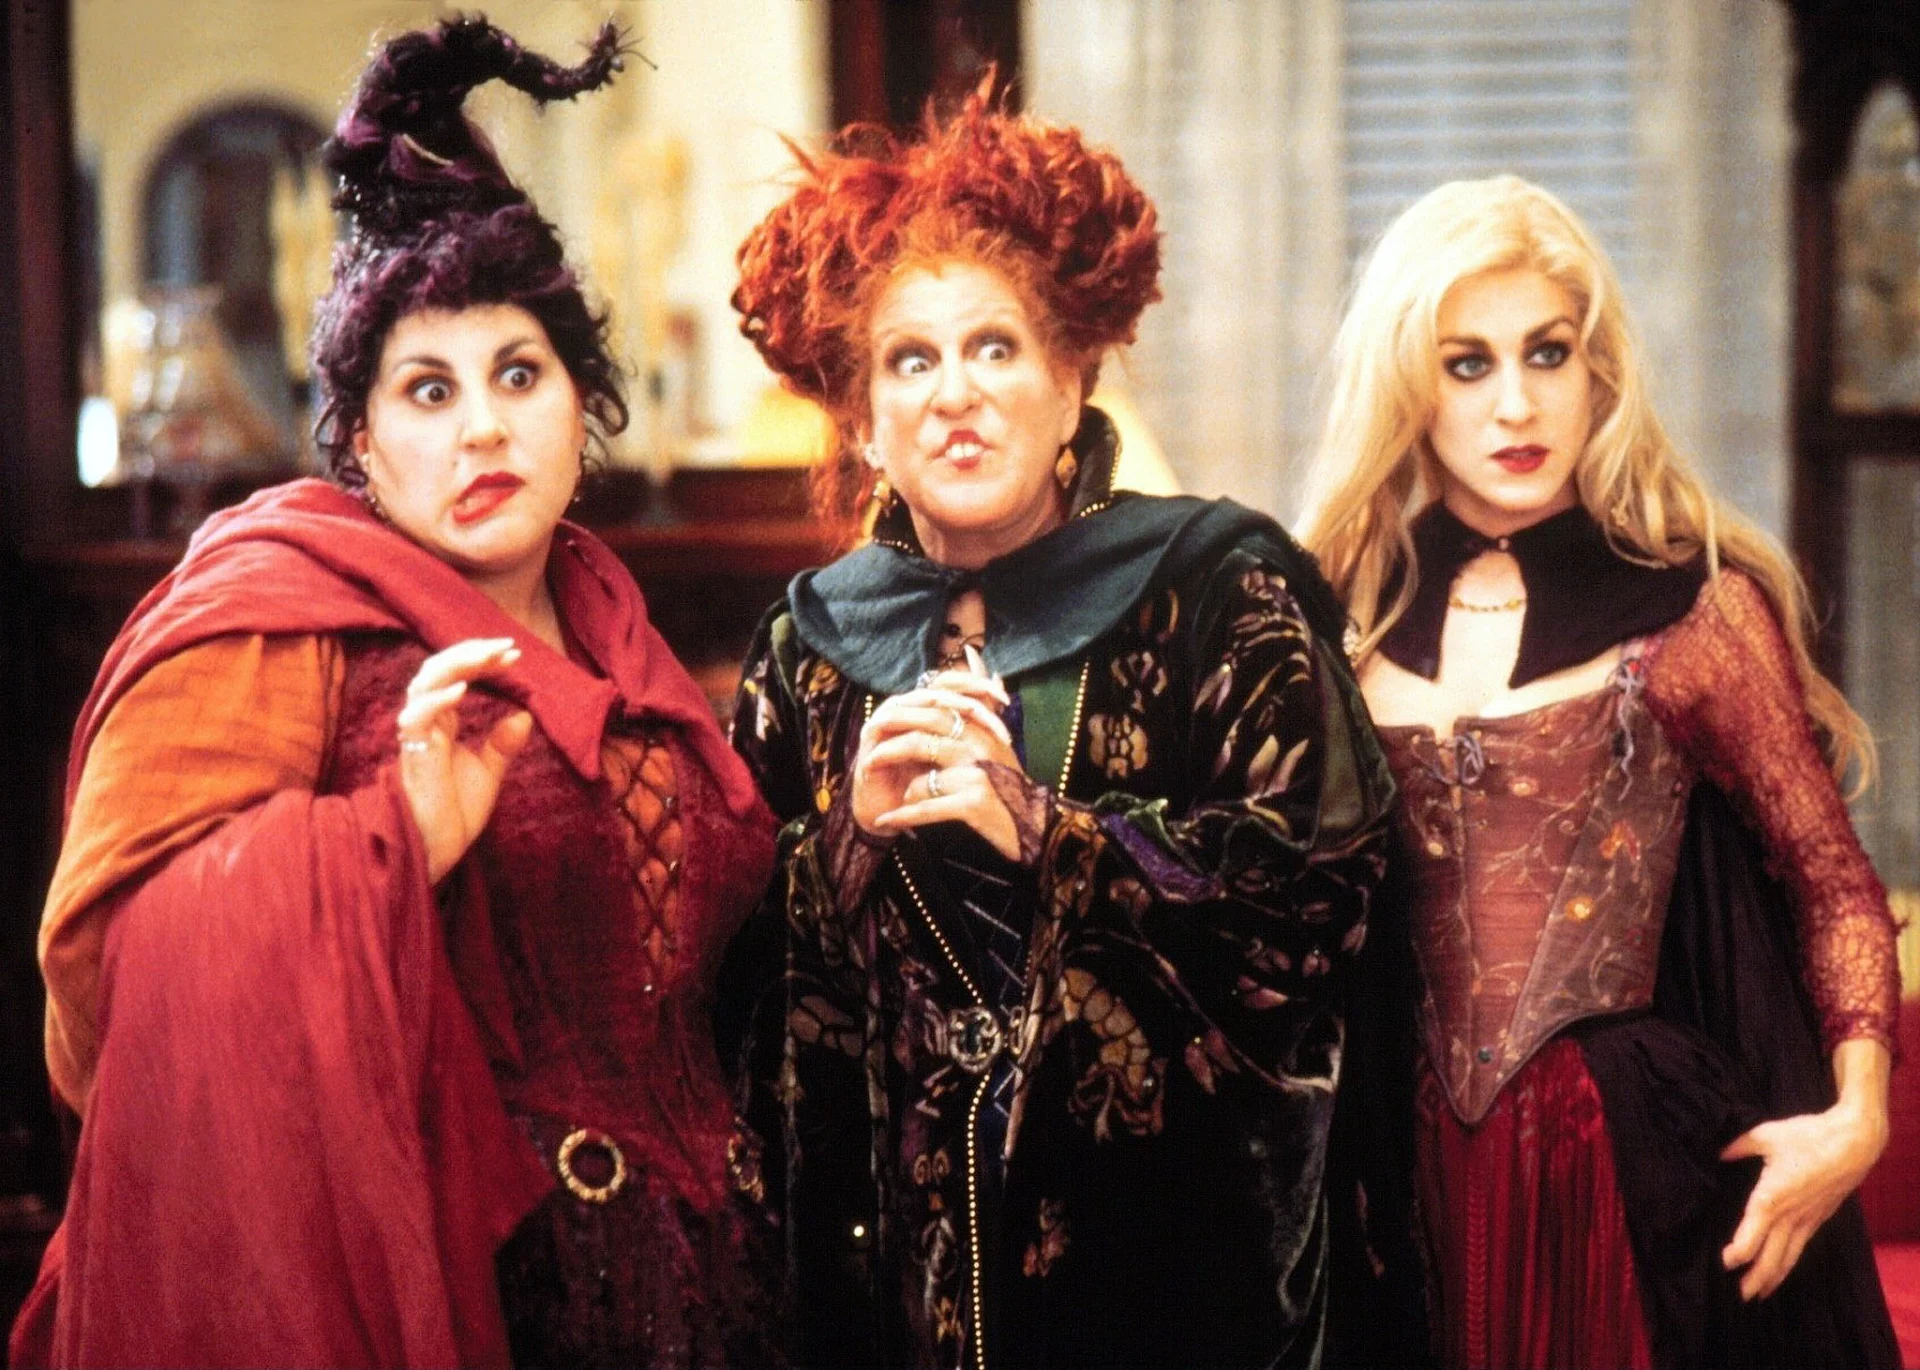 Female Disney villains: The Sanderson Sisters- Hocus Pocus (1993)